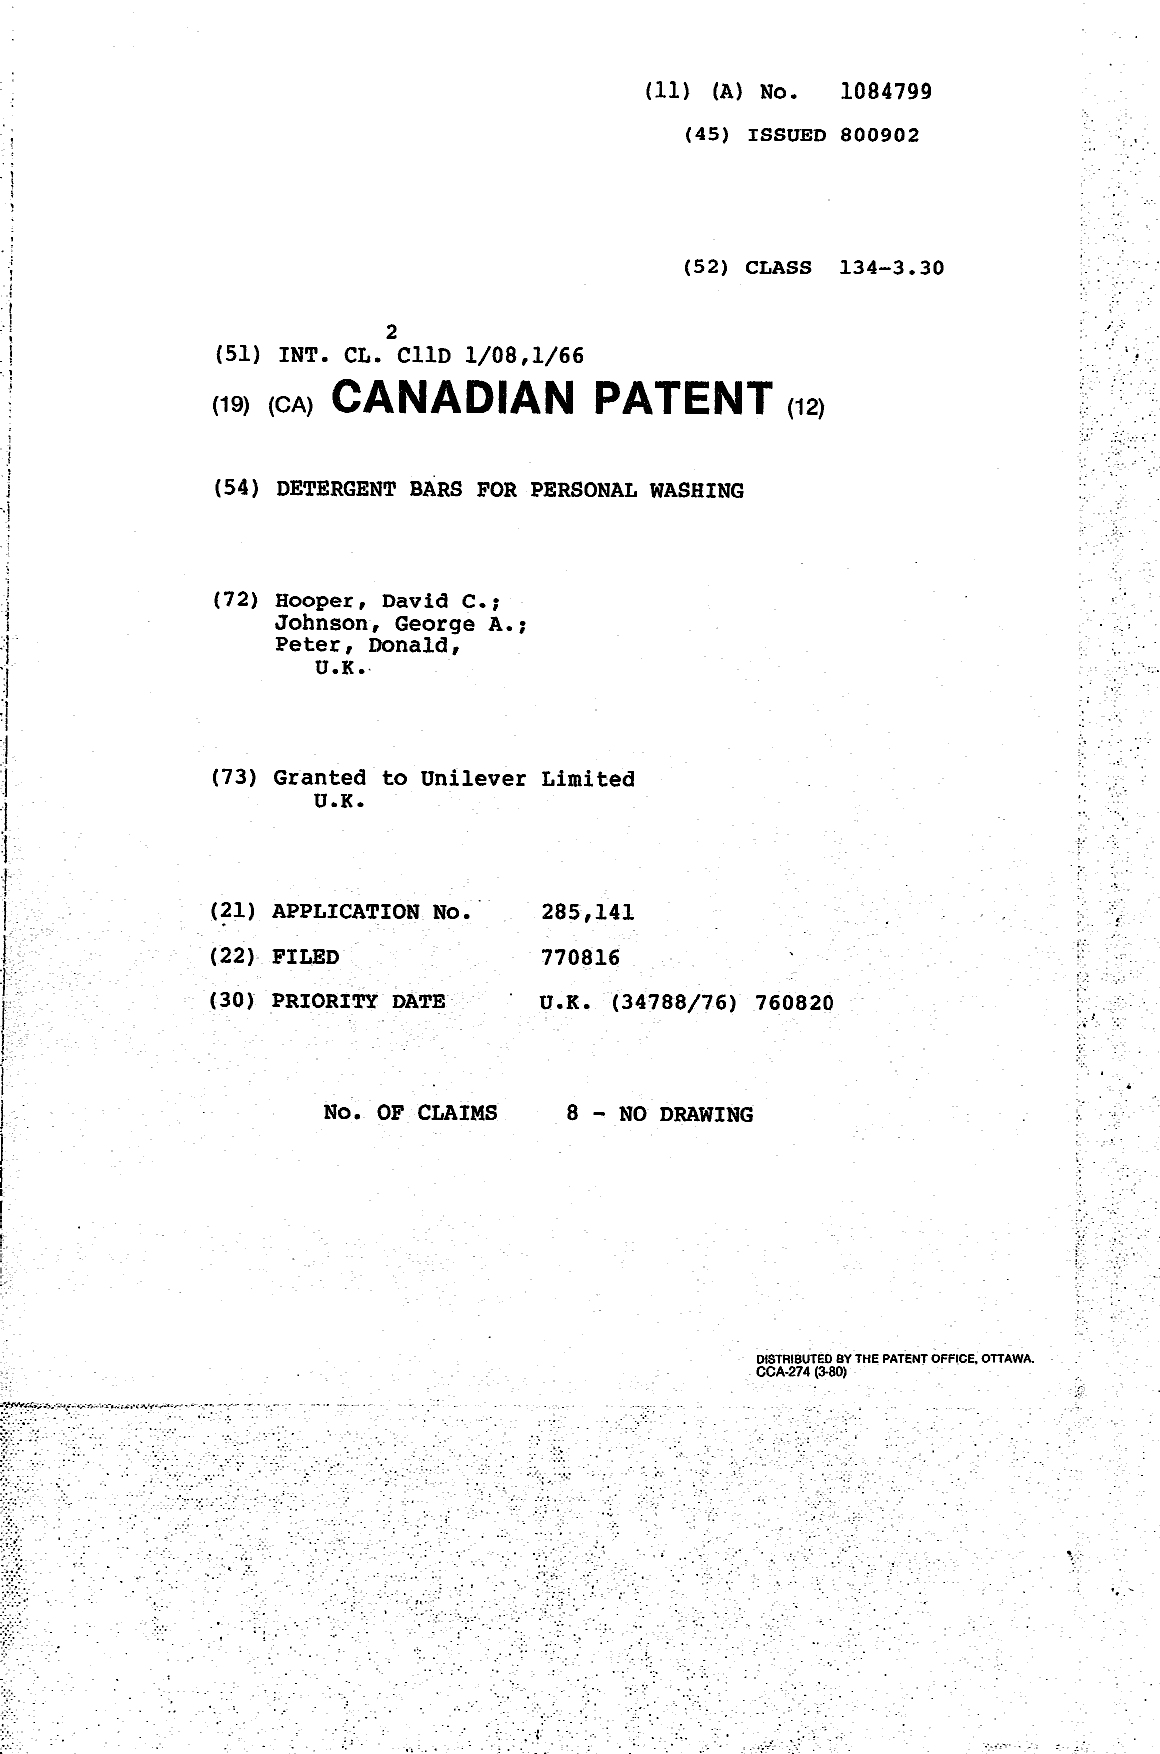 Document de brevet canadien 1084799. Page couverture 19940408. Image 1 de 1